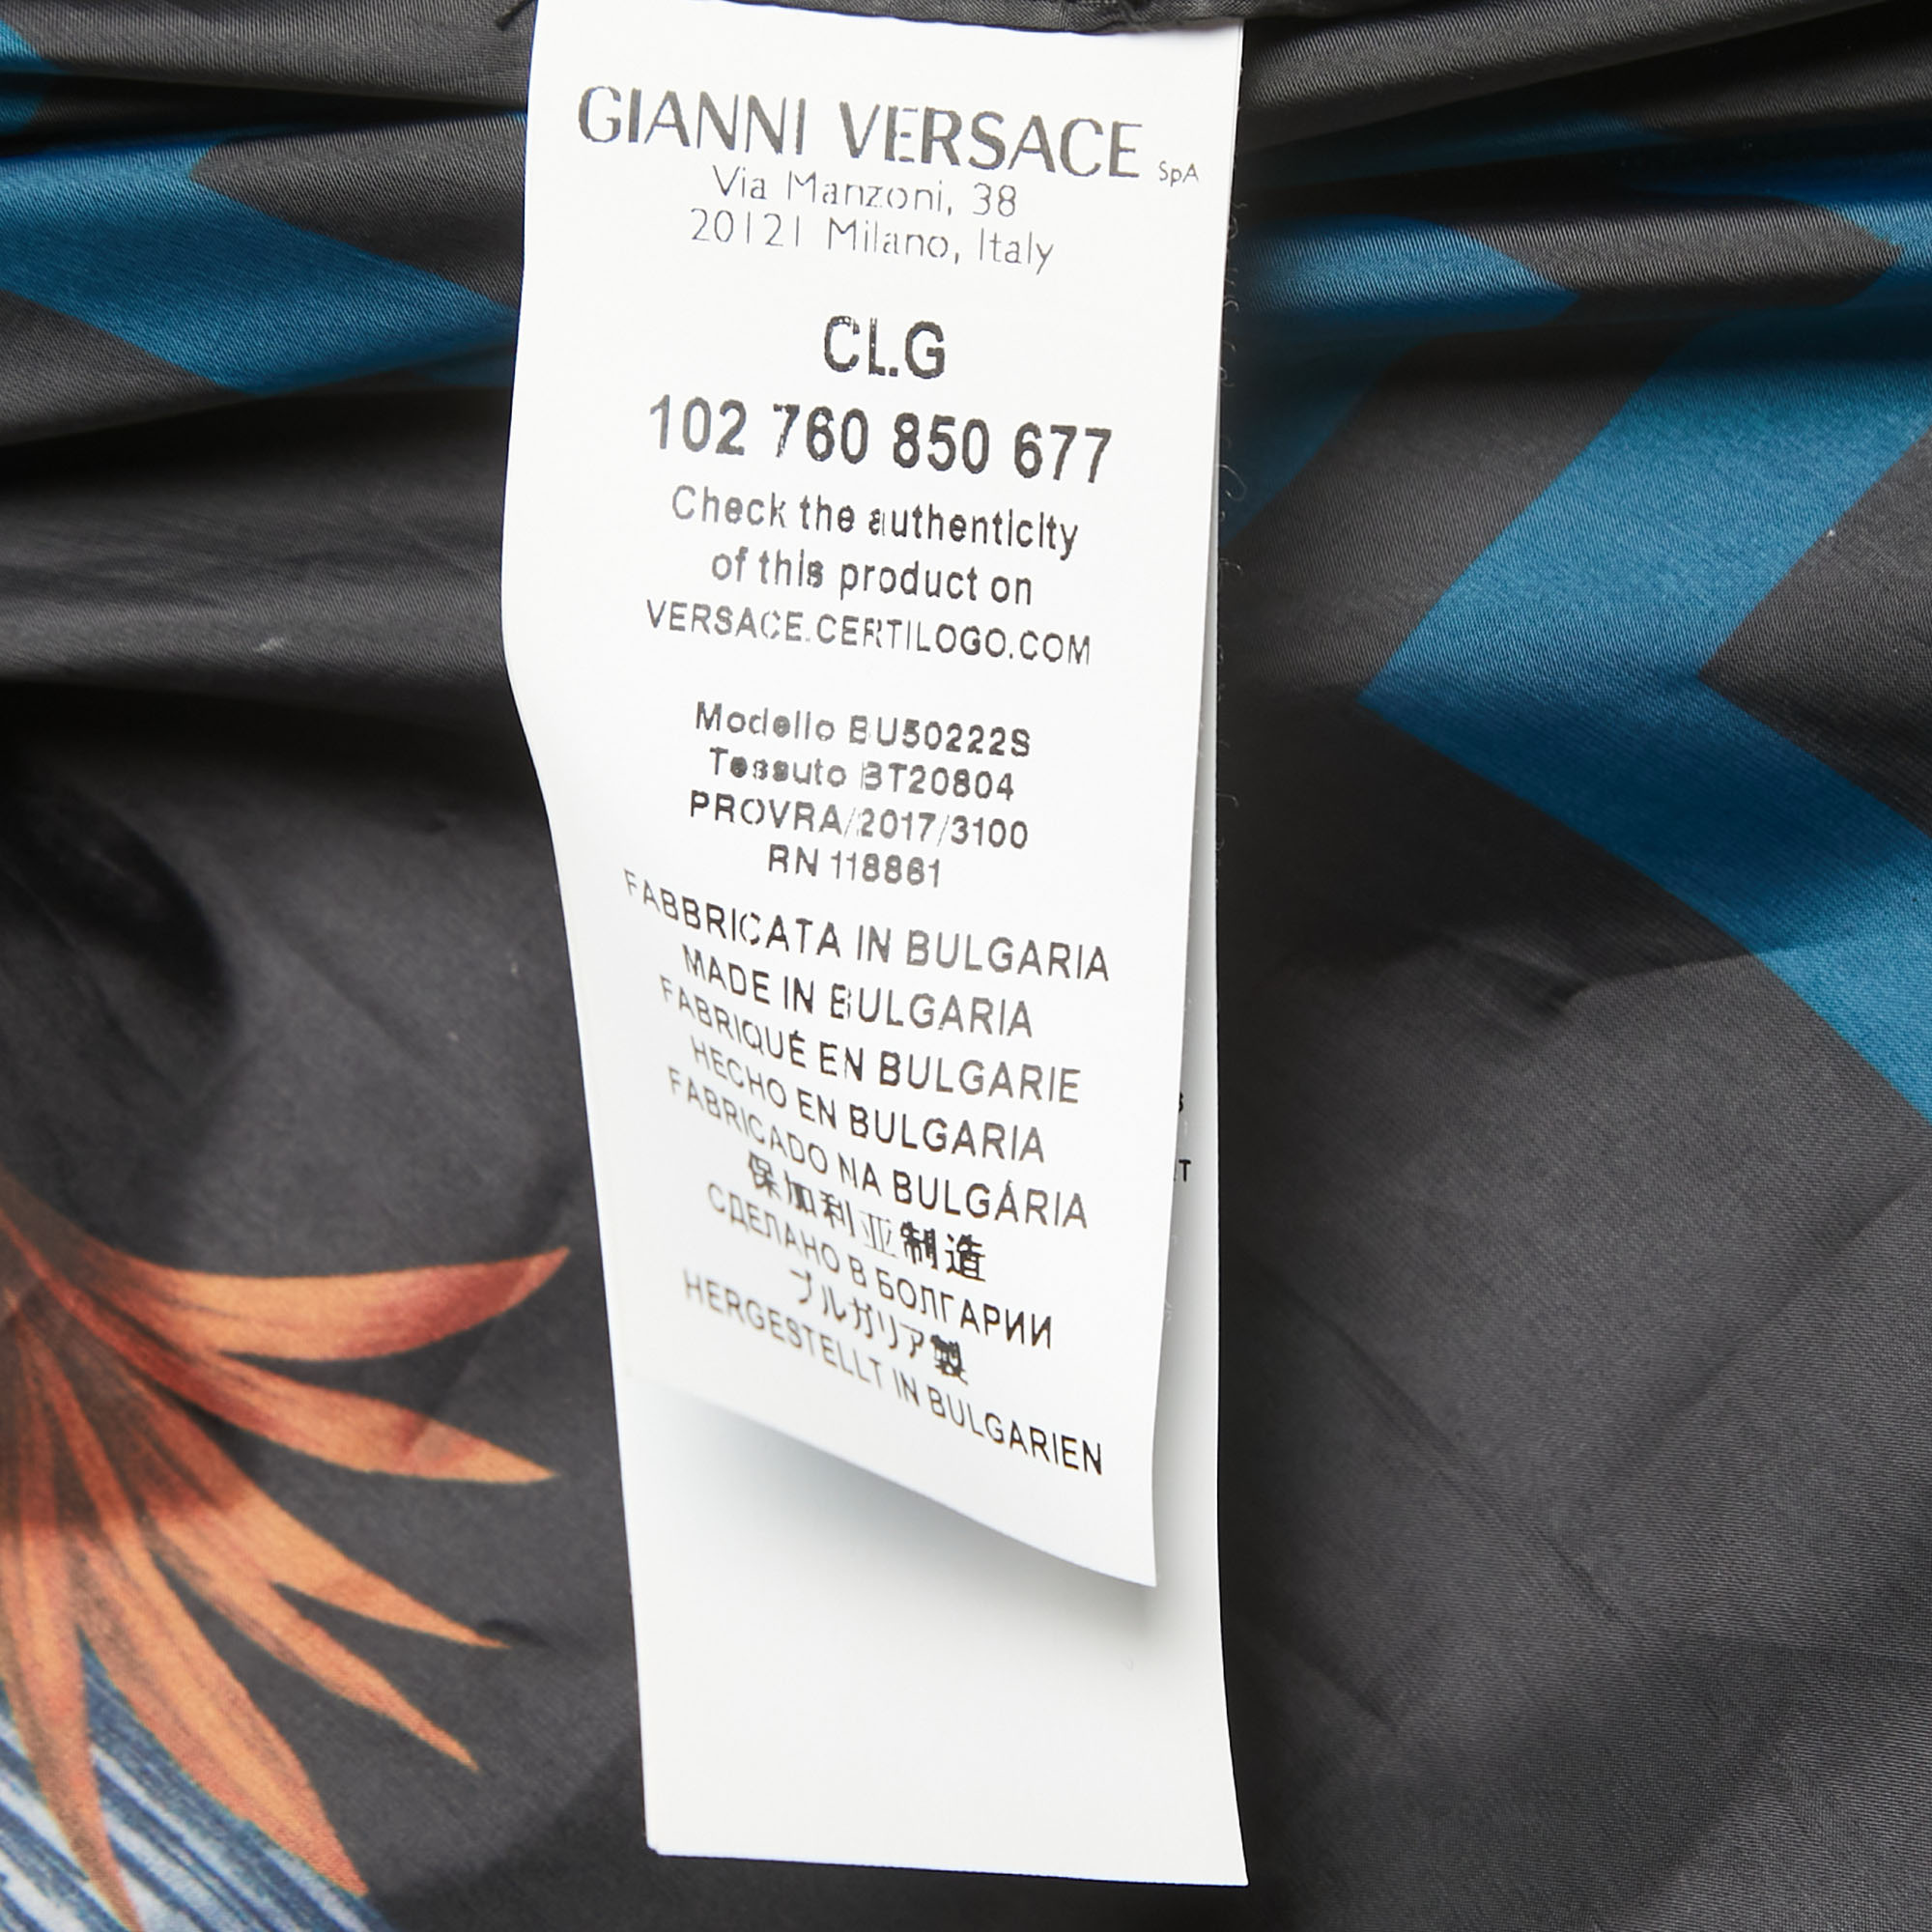 Versus Versace Black All-Over Print Synthetic Zip Front Jacket XL